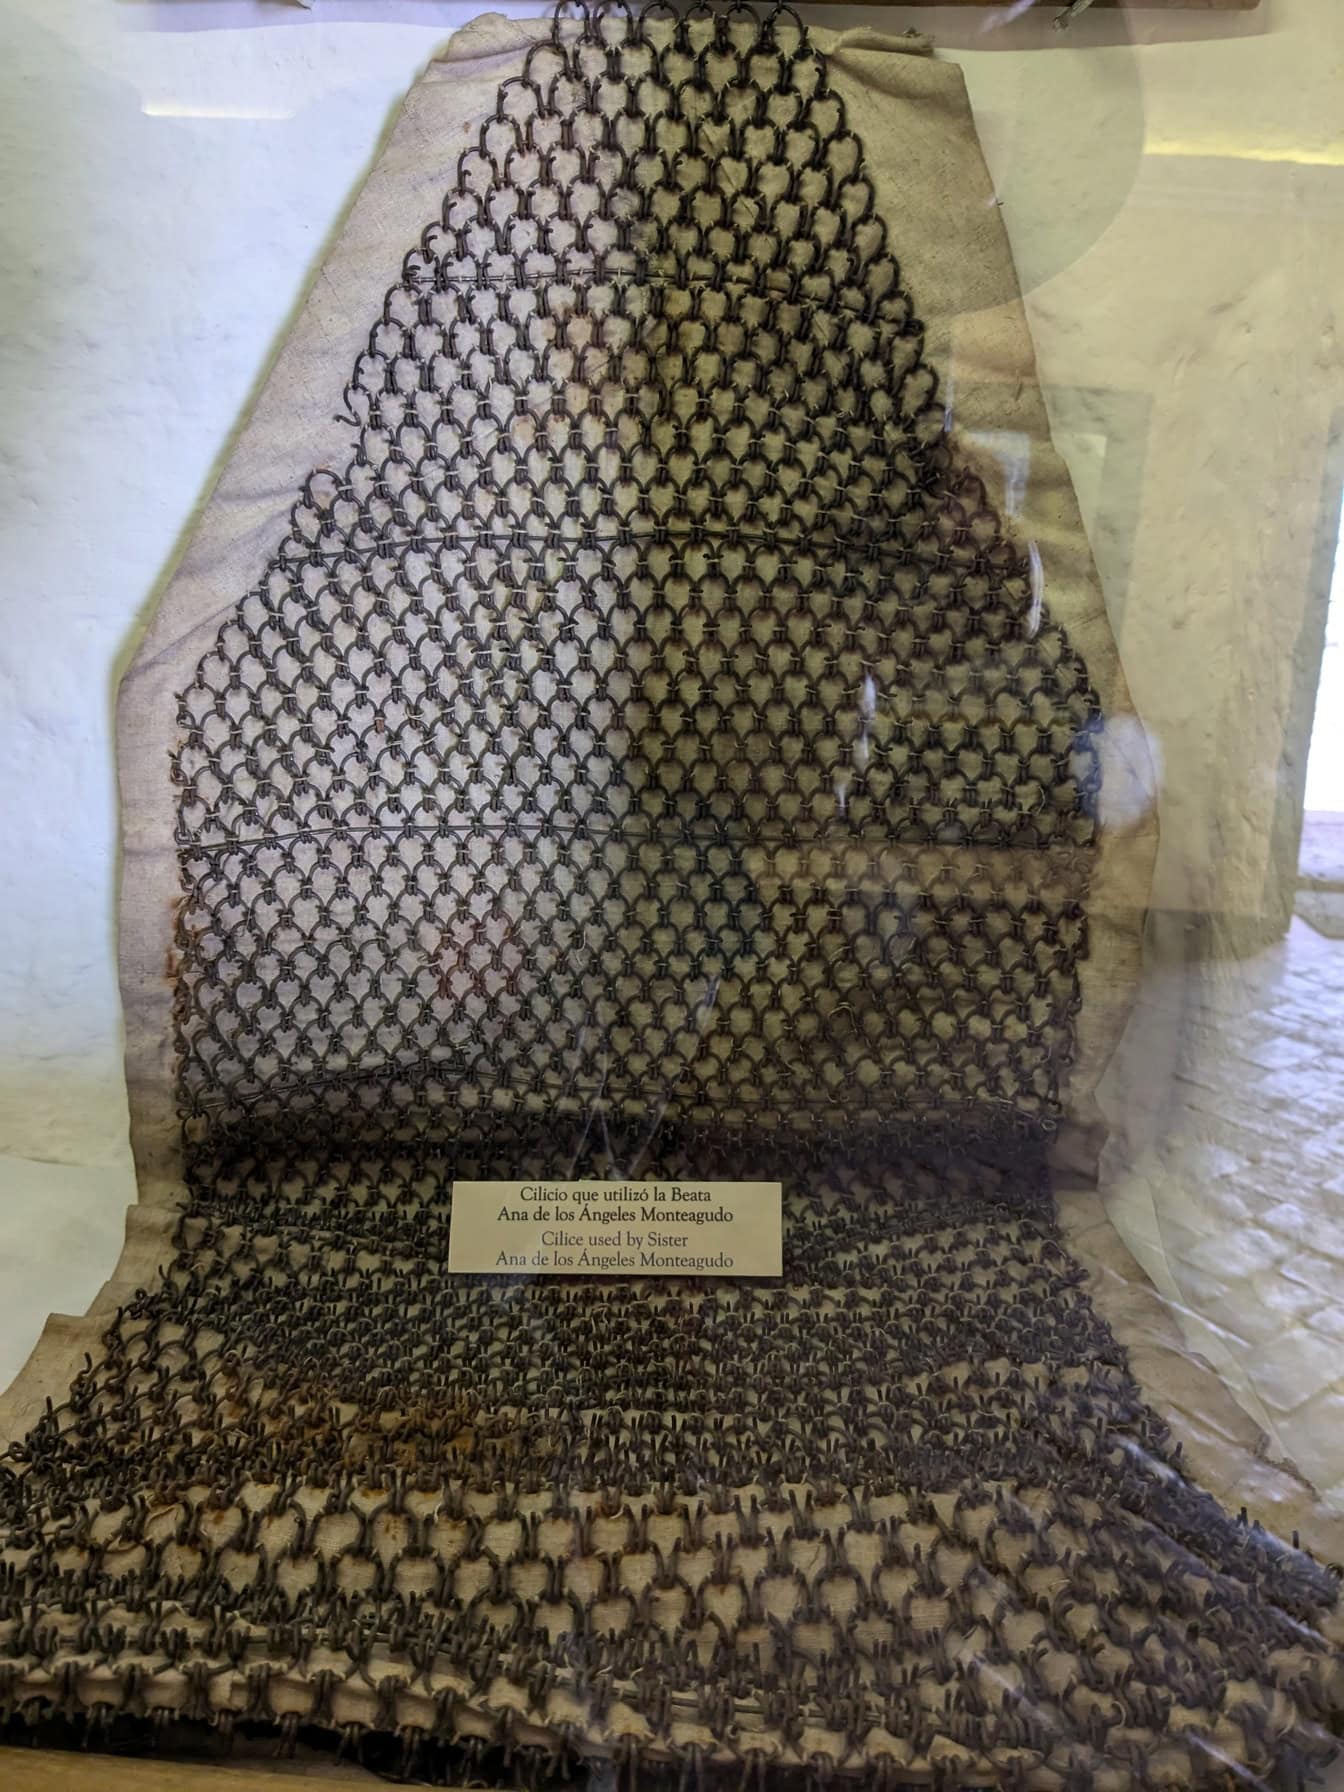 Peru’daki müzede sergilenen kız kardeşi Ana de los Angelos Monteagudo tarafından kullanılan zincirlerden yapılmış bir giysi